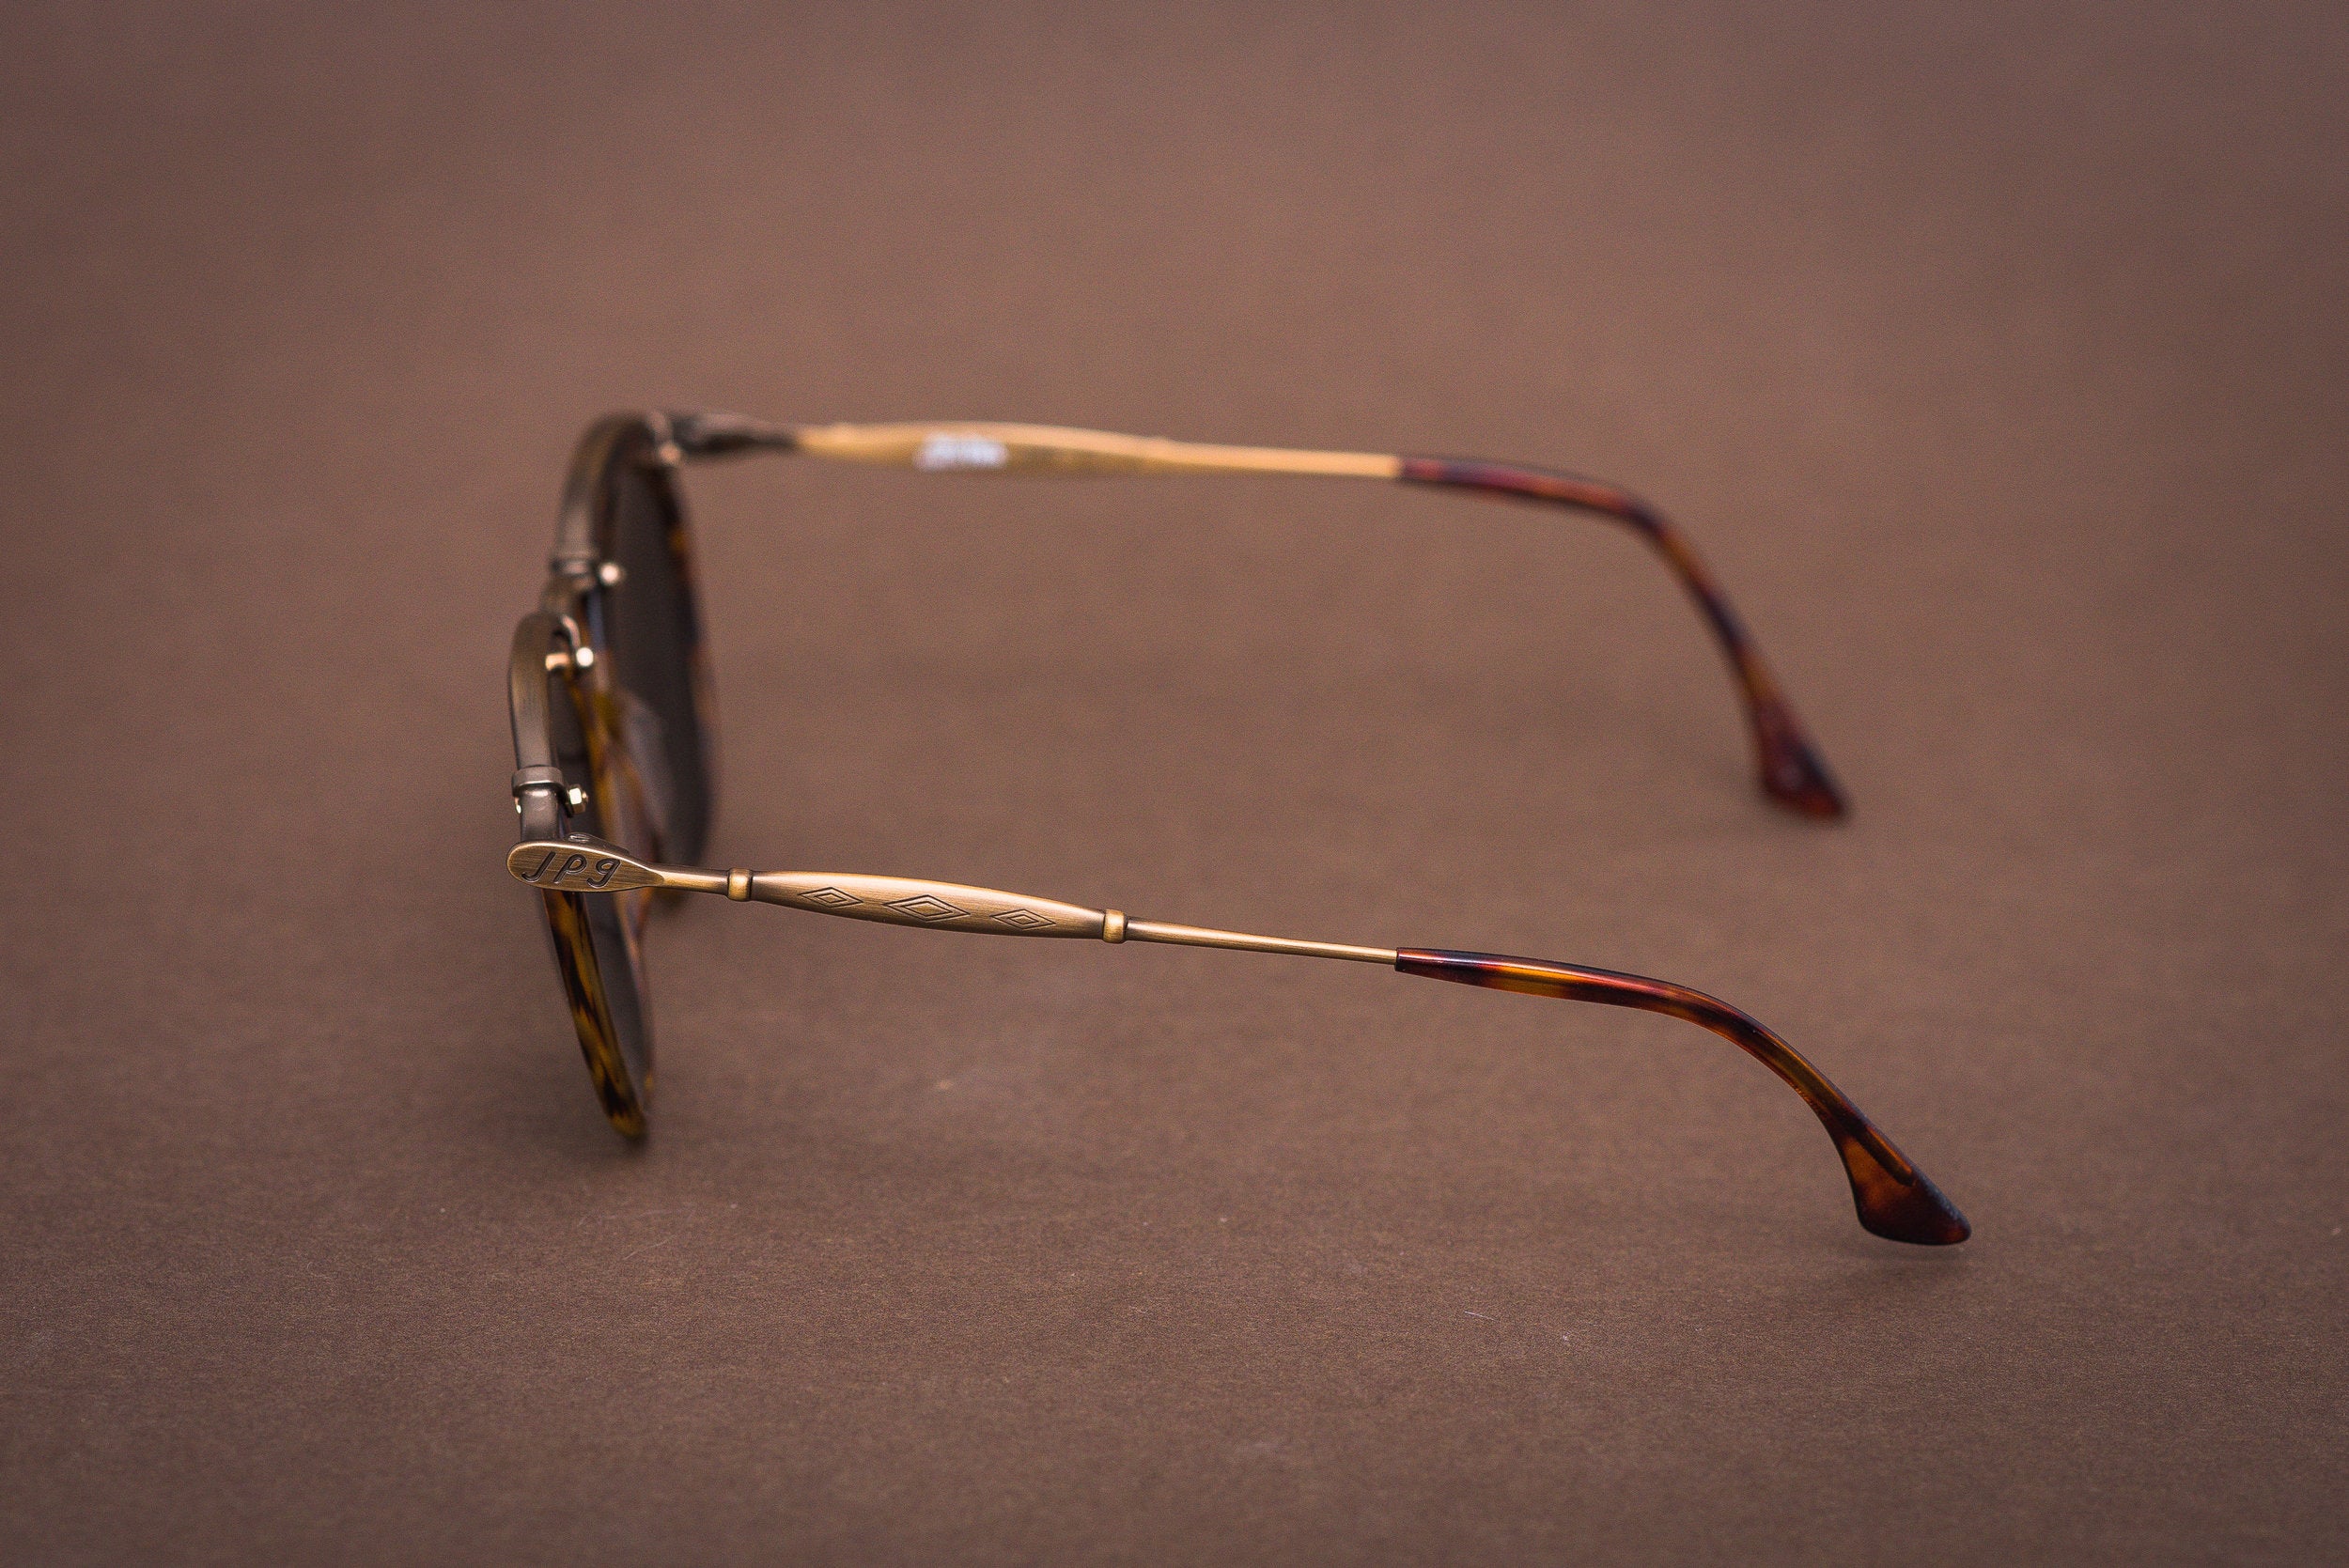 Jean Paul Gaultier 56-1273 sunglasses